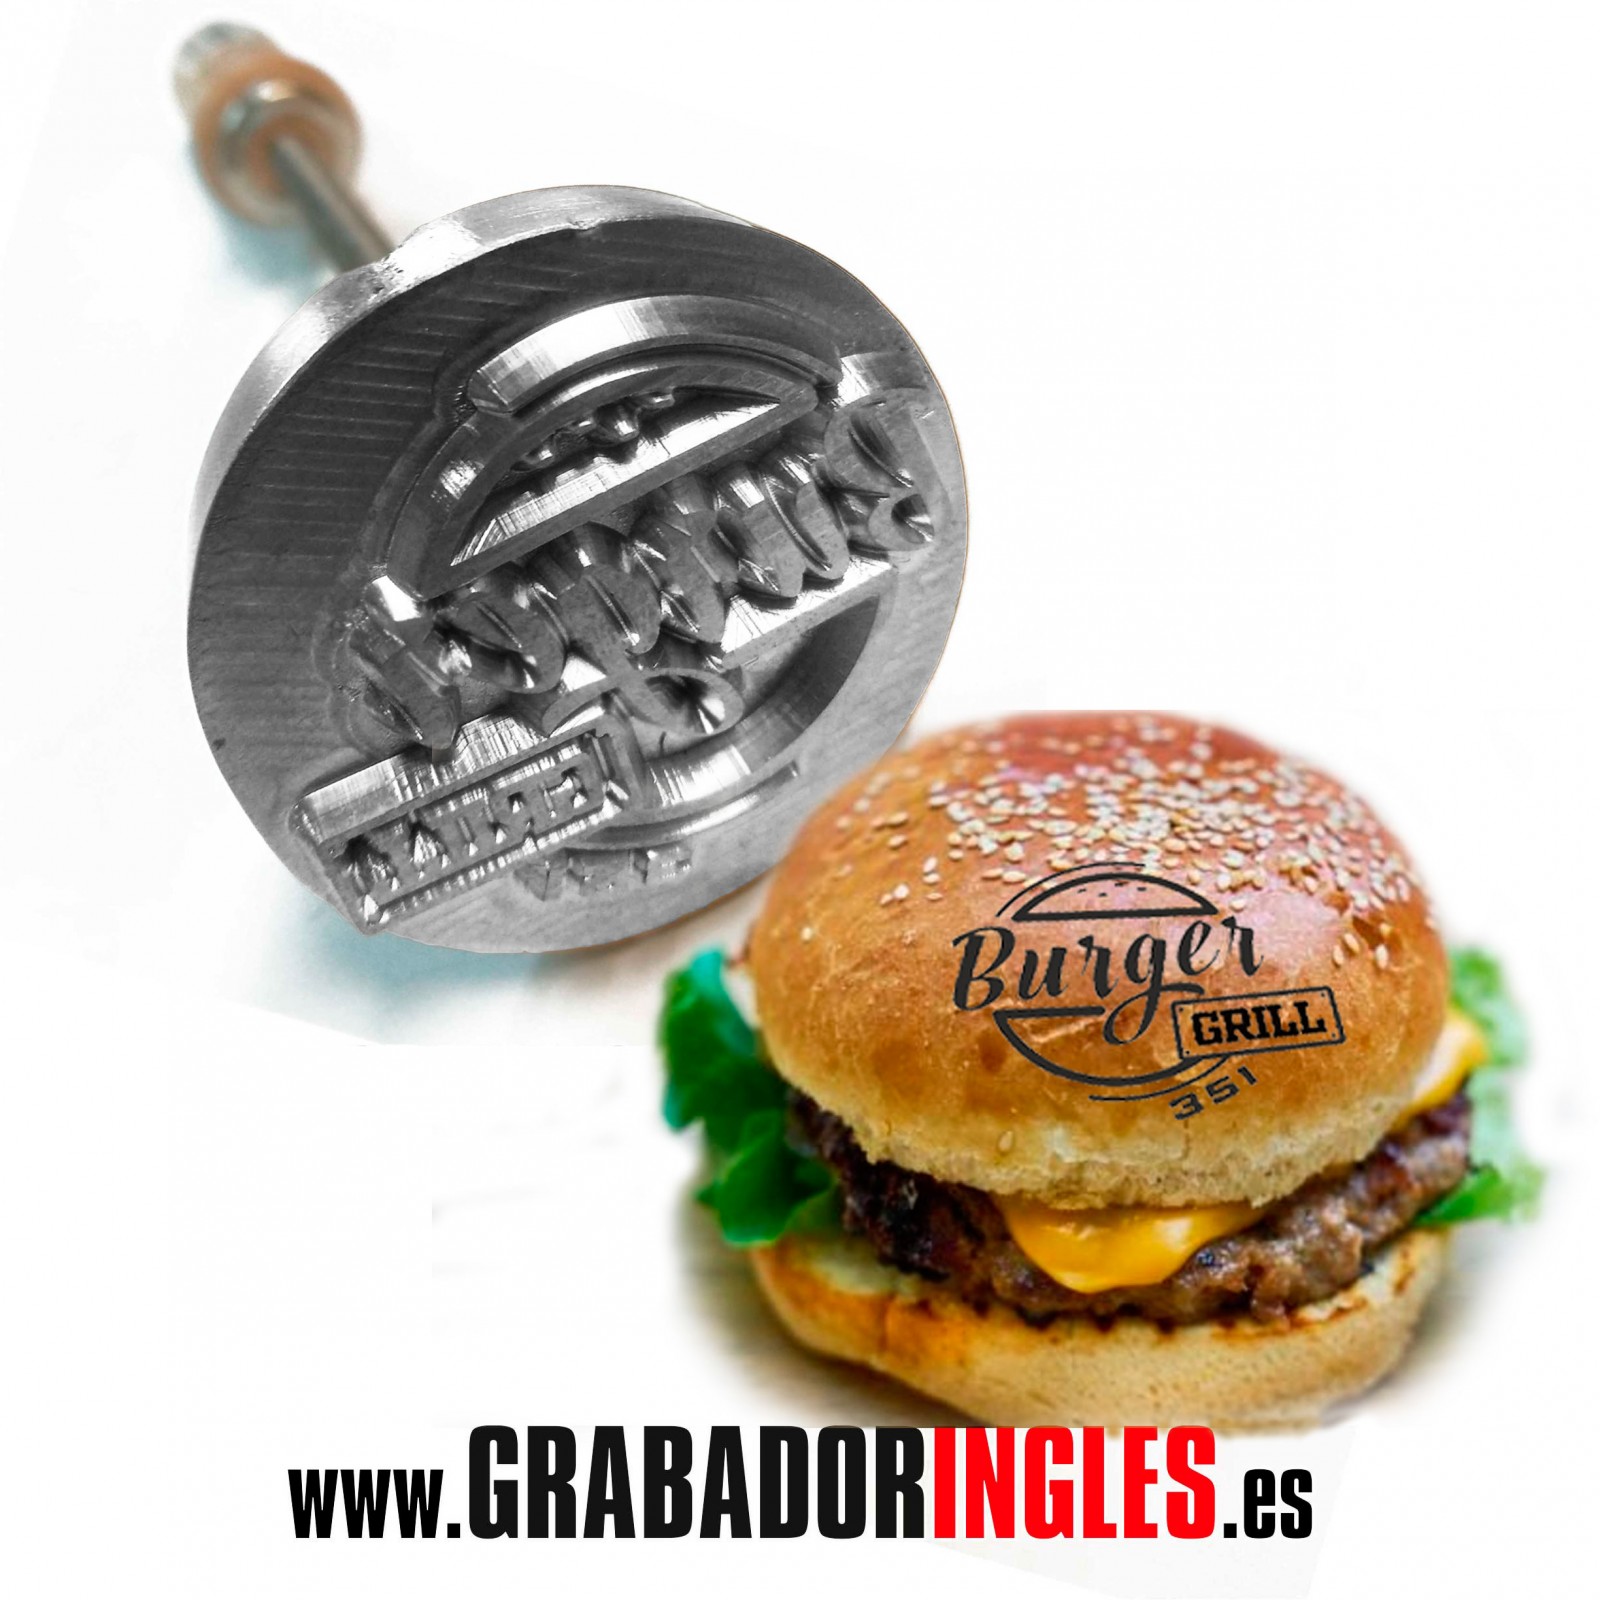 Sello para marcar hamburguesas al con sello personalizado logotipo o texto. Tienda online www.grabadoringles.es